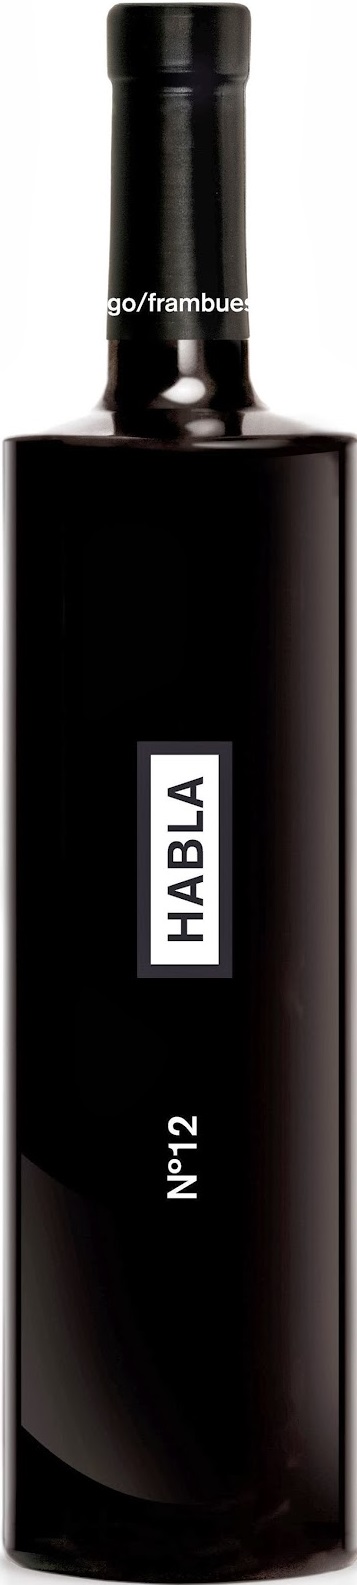 Logo del vino Habla nº 12